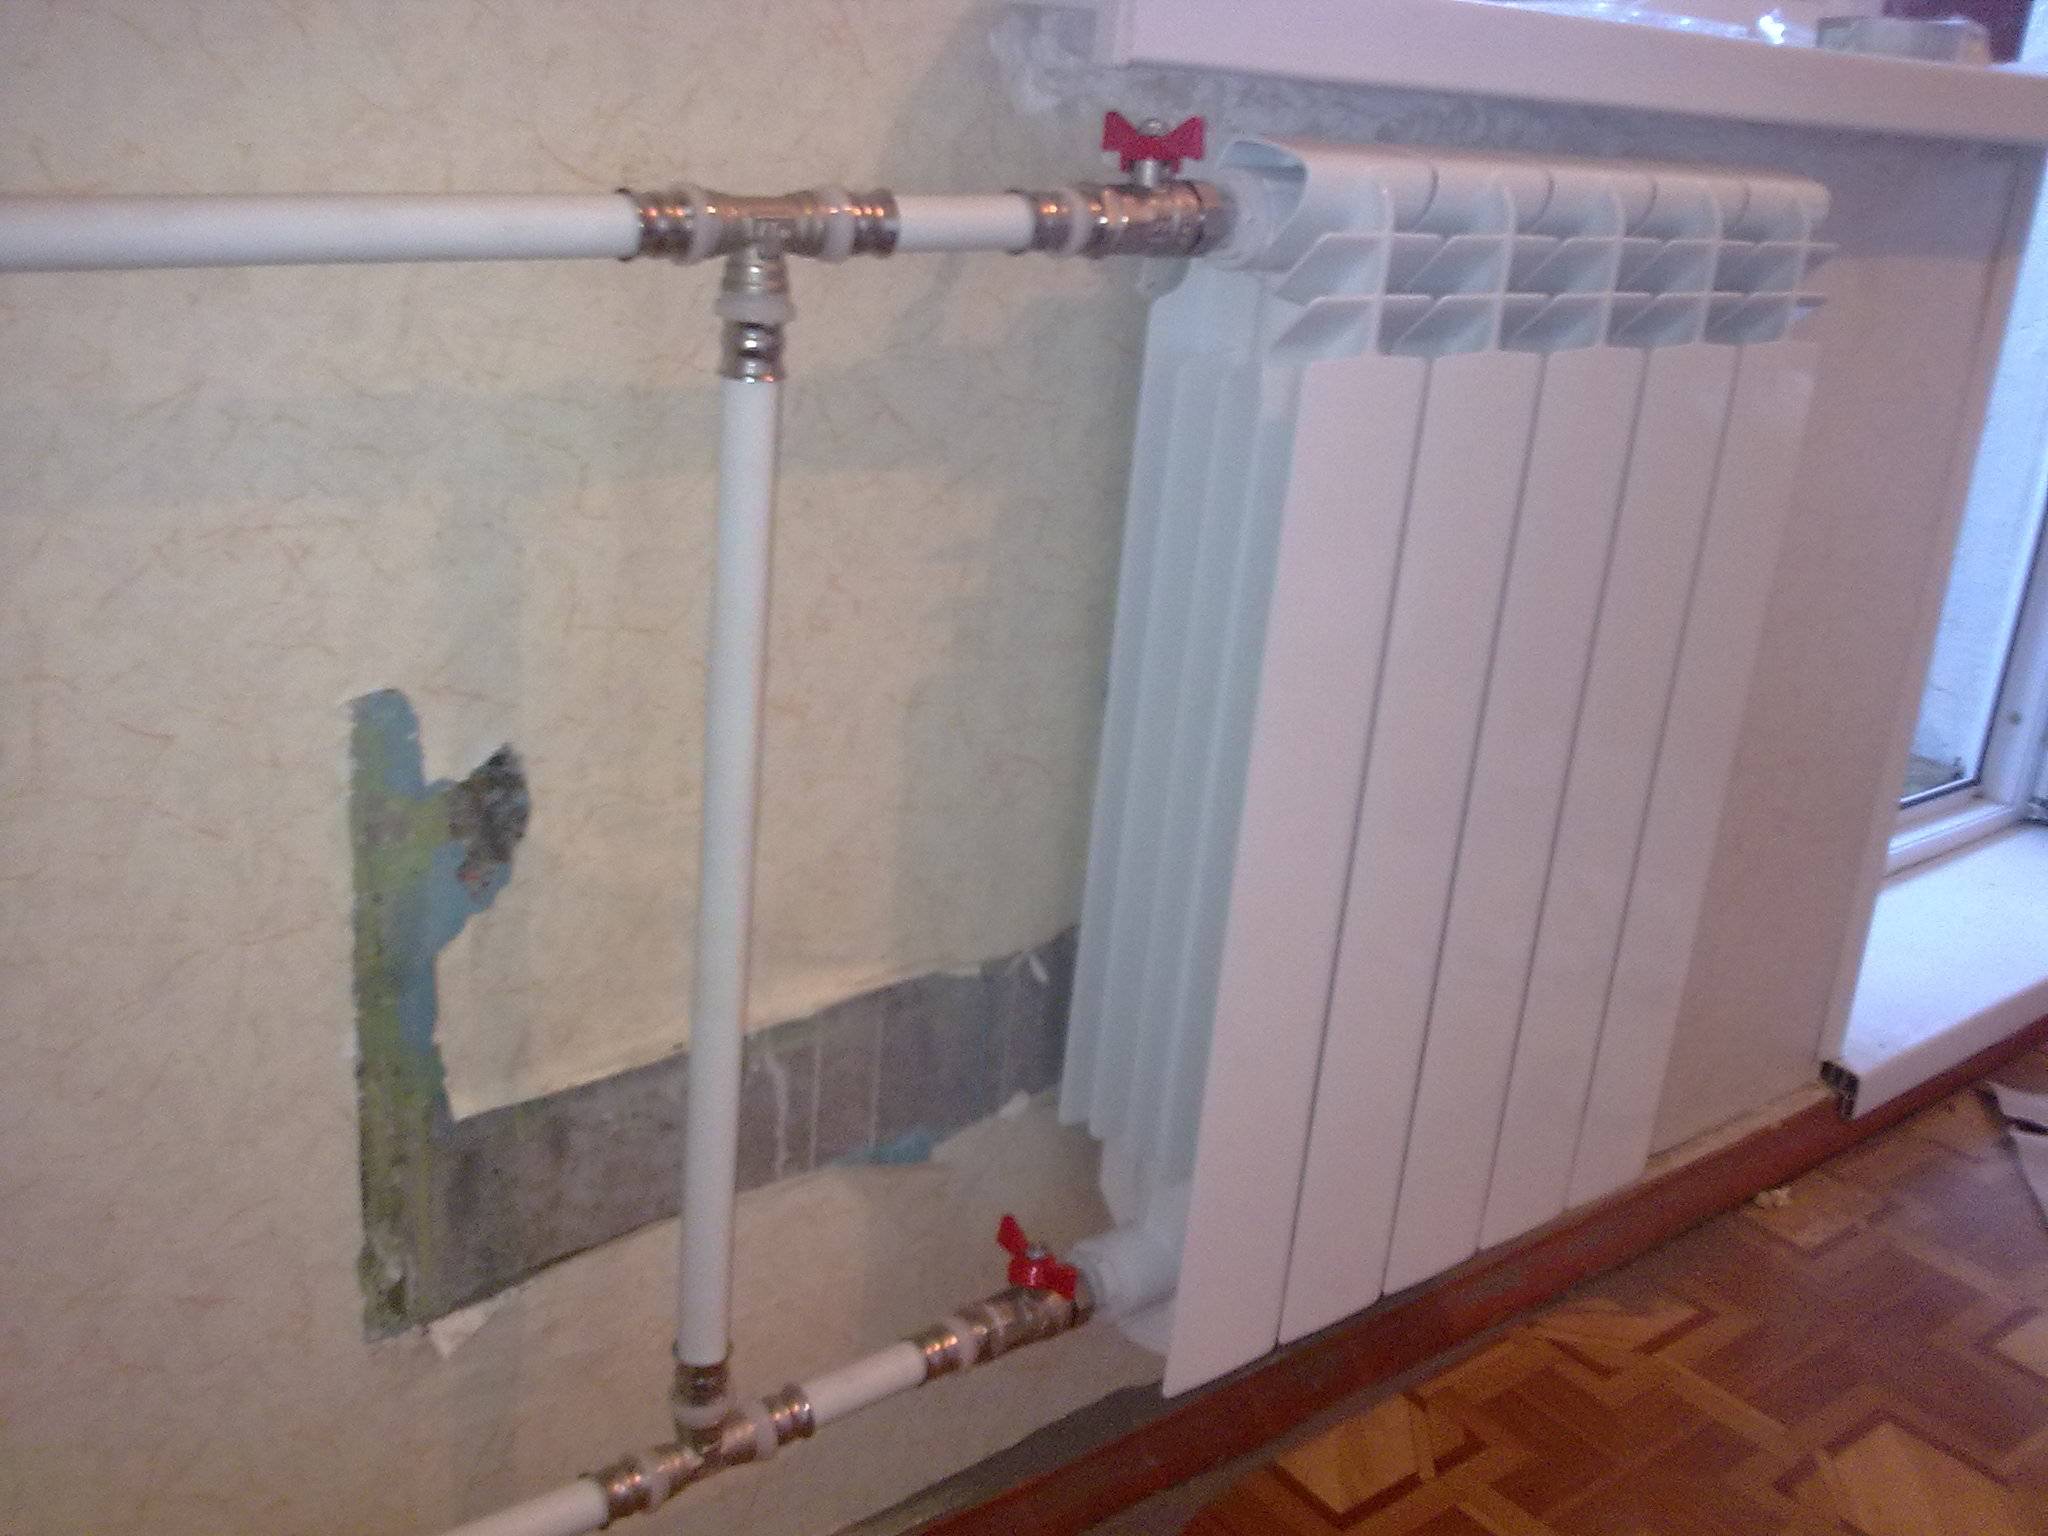 Замена системы отопления в квартире, как правильно поменять радиаторы, при необходимости отключить отопление, подробное фото и видео